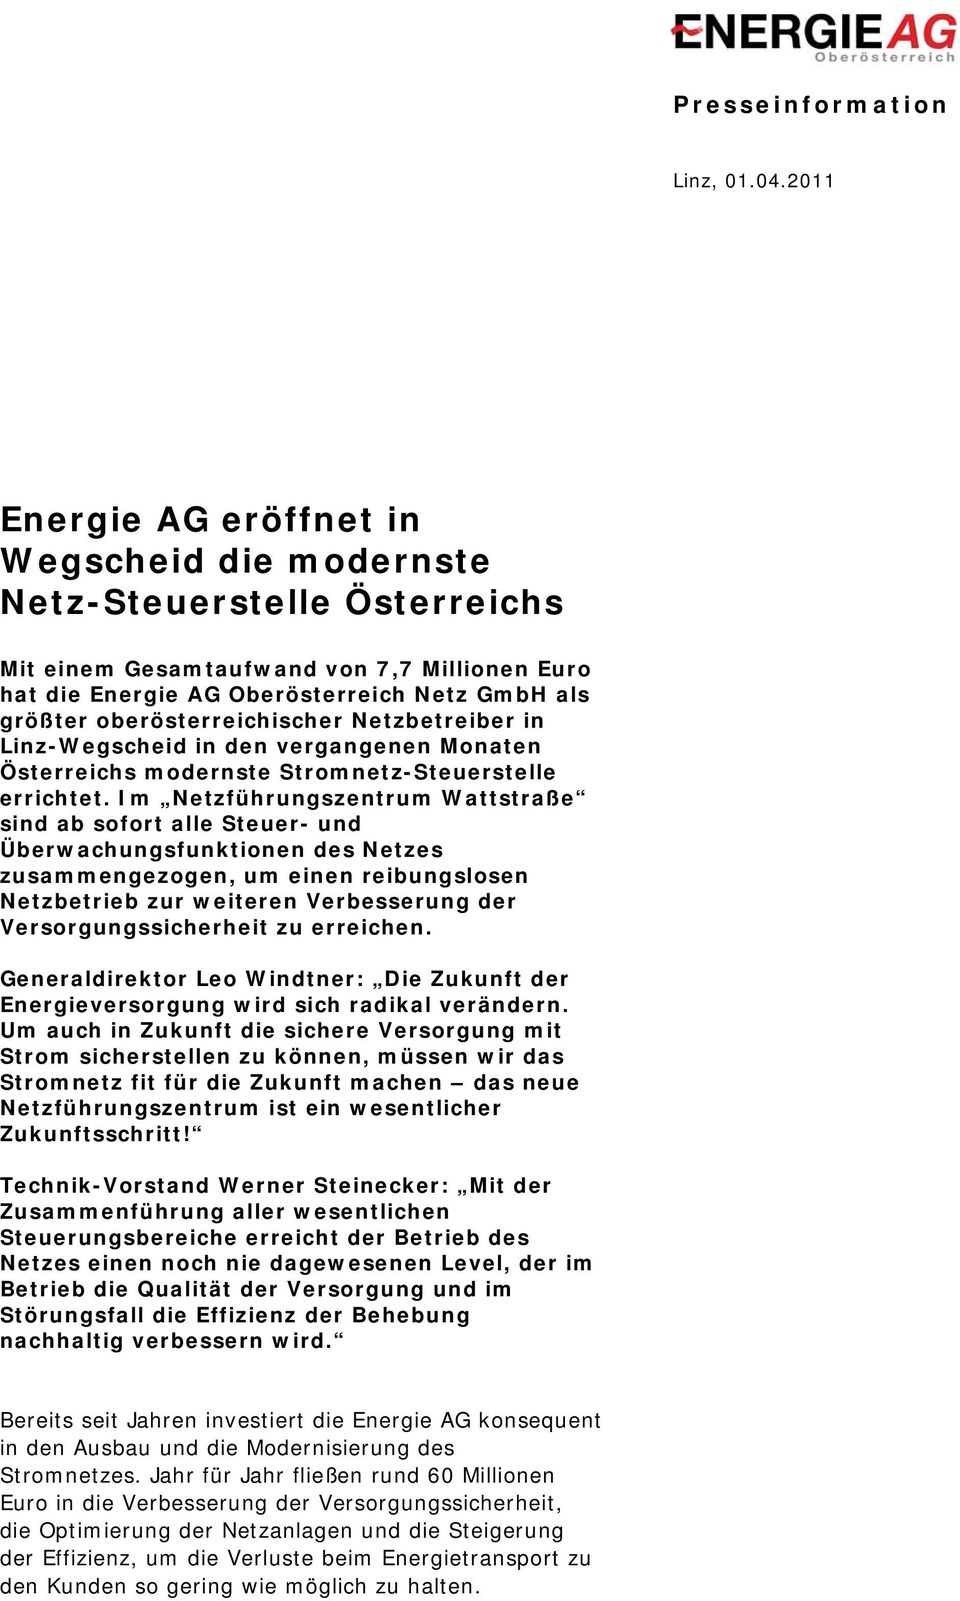 oberösterreichischer Netzbetreiber in Linz-Wegscheid in den vergangenen Monaten Österreichs modernste Stromnetz-Steuerstelle errichtet.